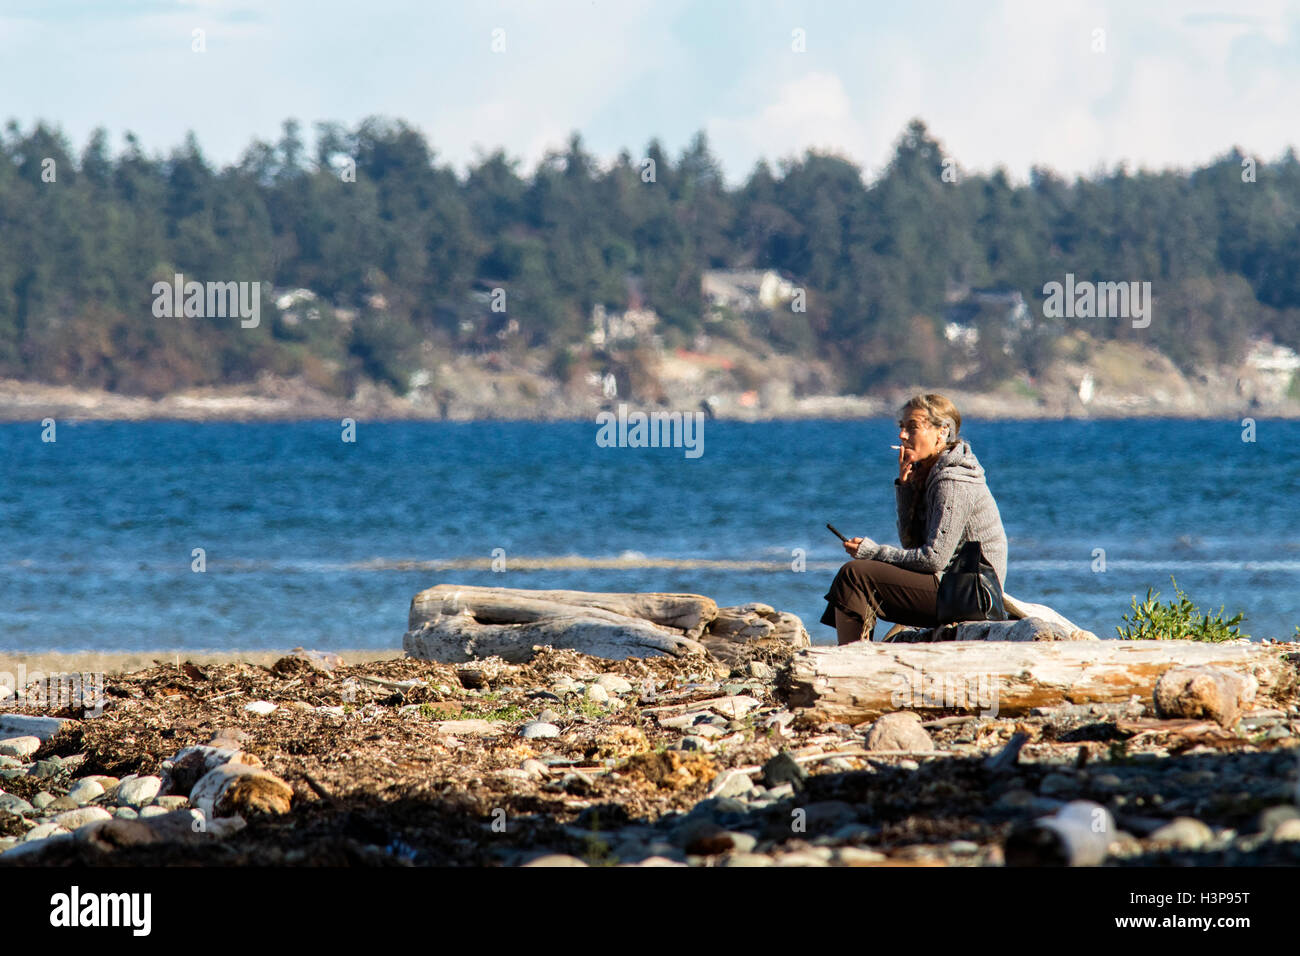 Femme fumant sur la plage - Parc provincial de Rathtrevor Beach - Parksville, île de Vancouver, Colombie-Britannique, Canada Banque D'Images